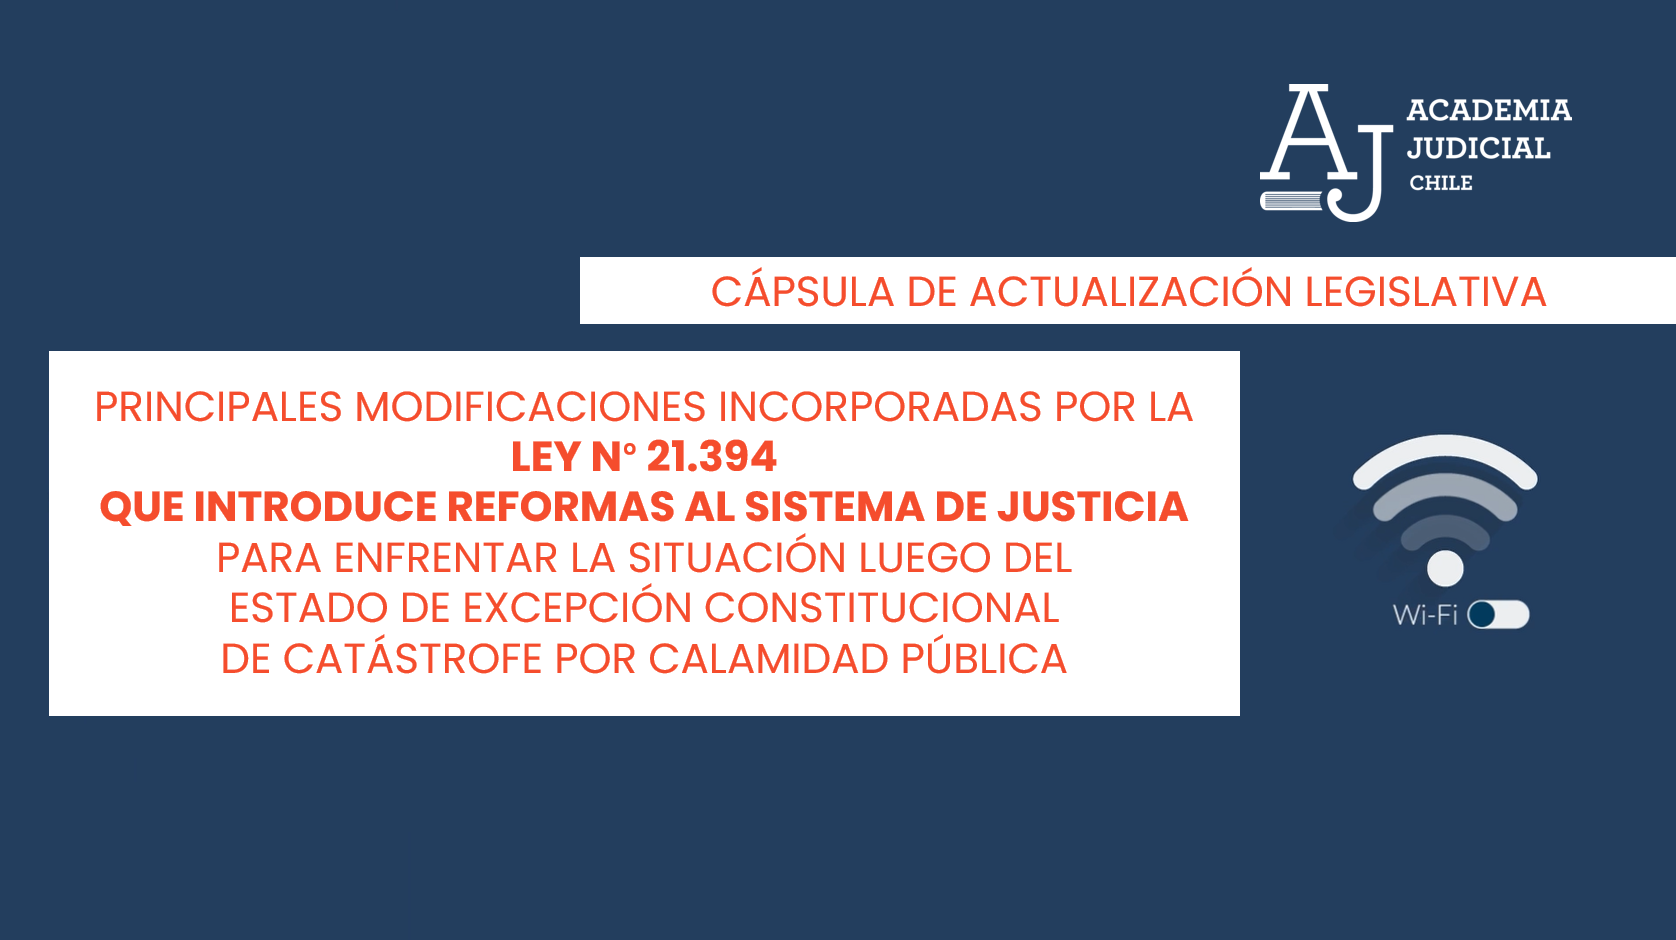 Cápsula de actualización legislativa sobre la Ley N° 21.394 (Reformas al sistema de justicia)